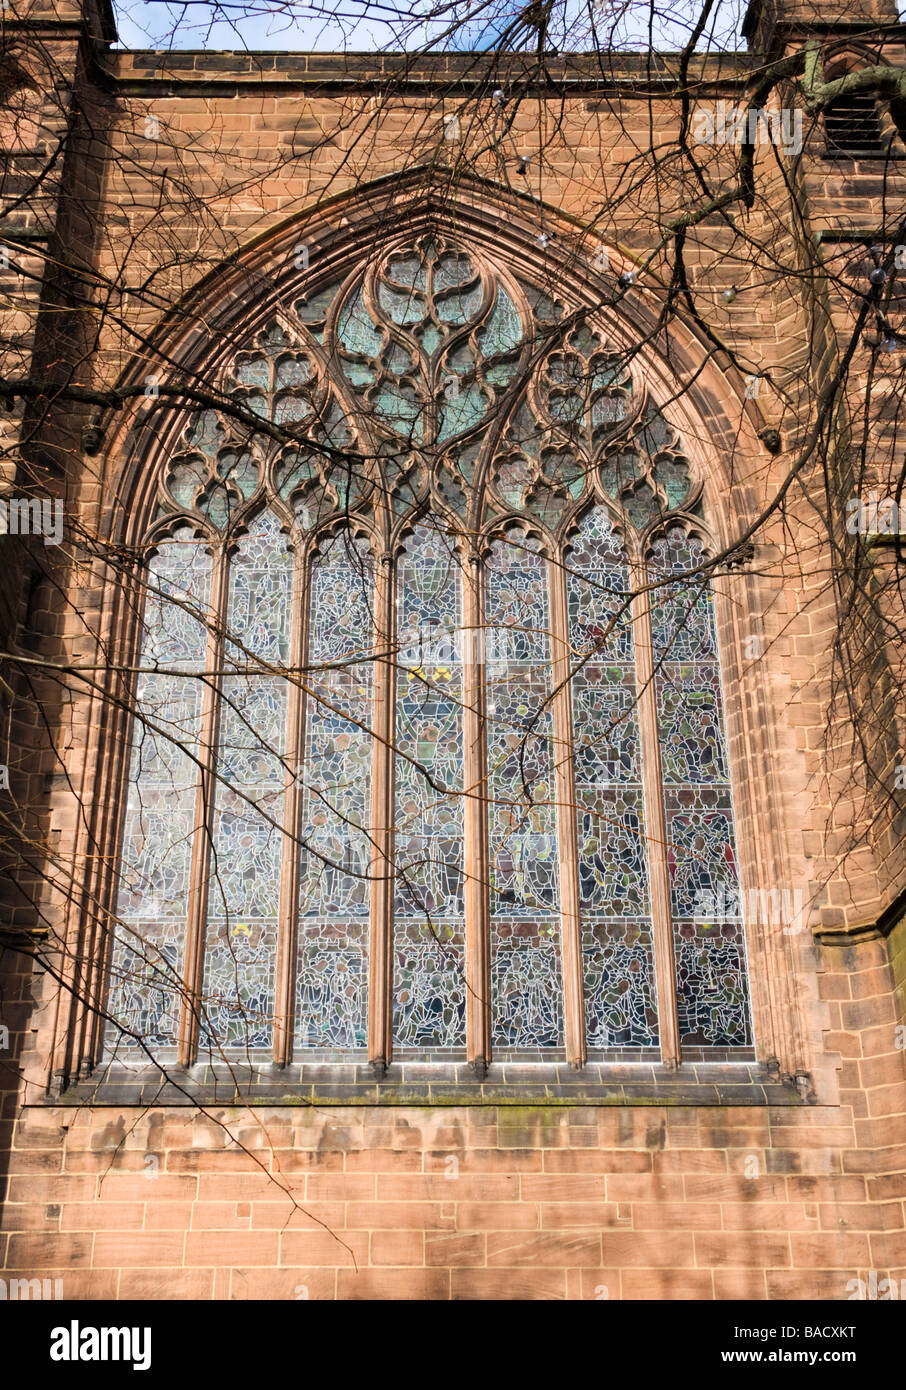 La fenêtre de l'Est, de la cathédrale de Chester (St. Werburgh's), Chester, en Angleterre, Hiver 2009 Banque D'Images